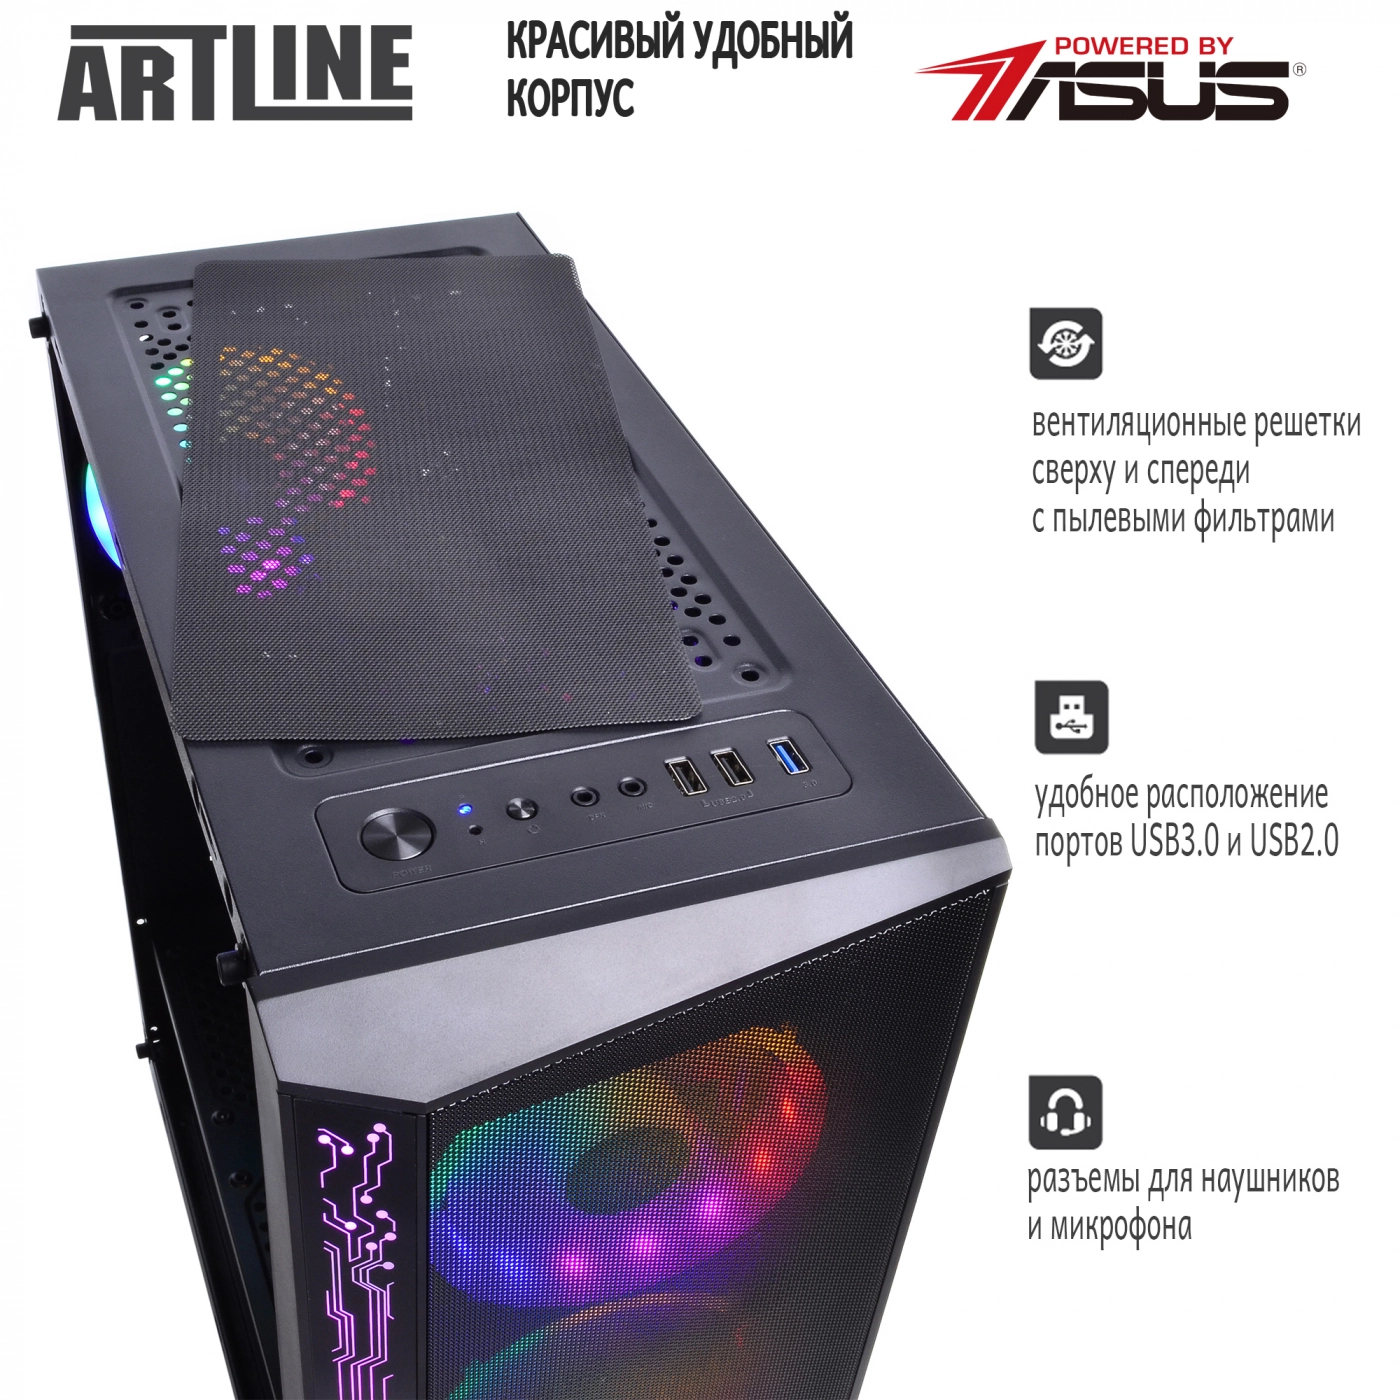 Купить Компьютер ARTLINE Gaming X53v15 - фото 4